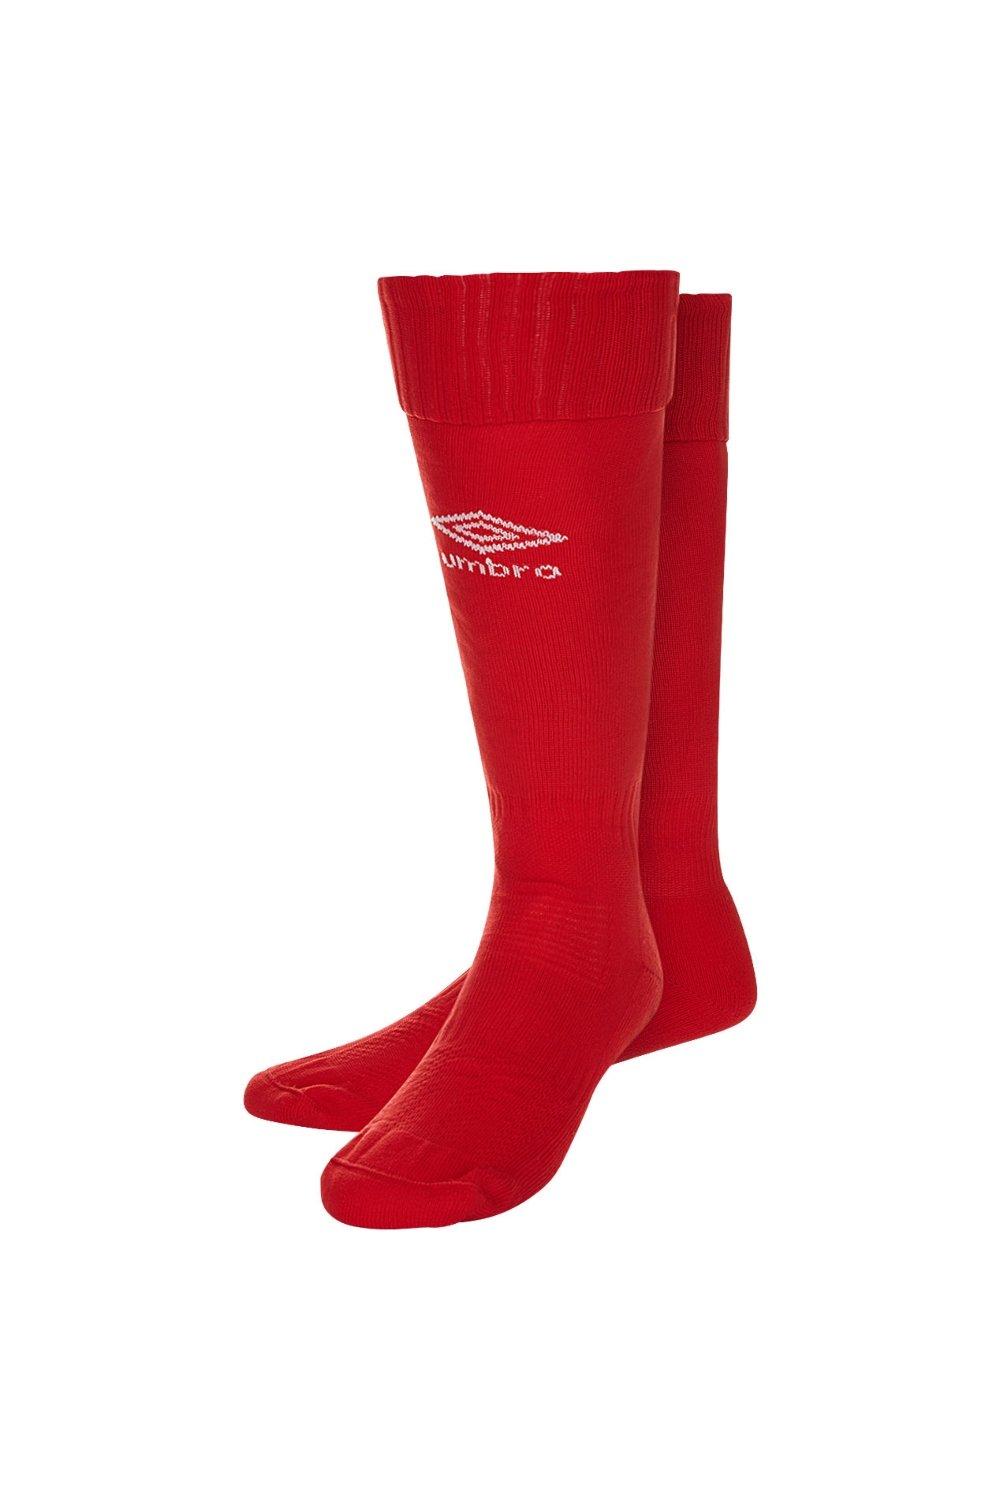 Футбольные носки Classico Umbro, красный